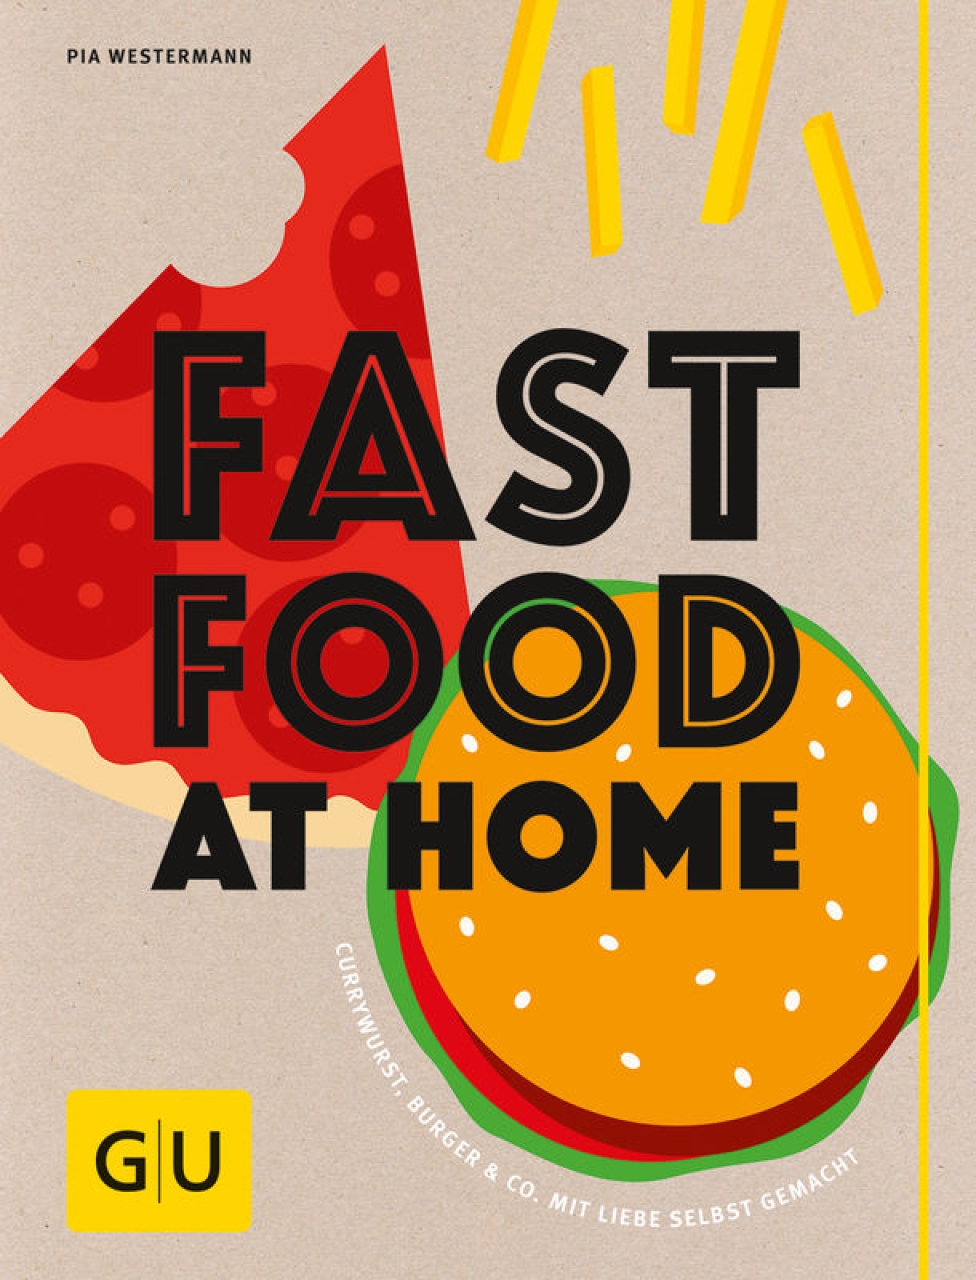 GU Kochbuch - ''Fast Food at Home'', Pia Westermann